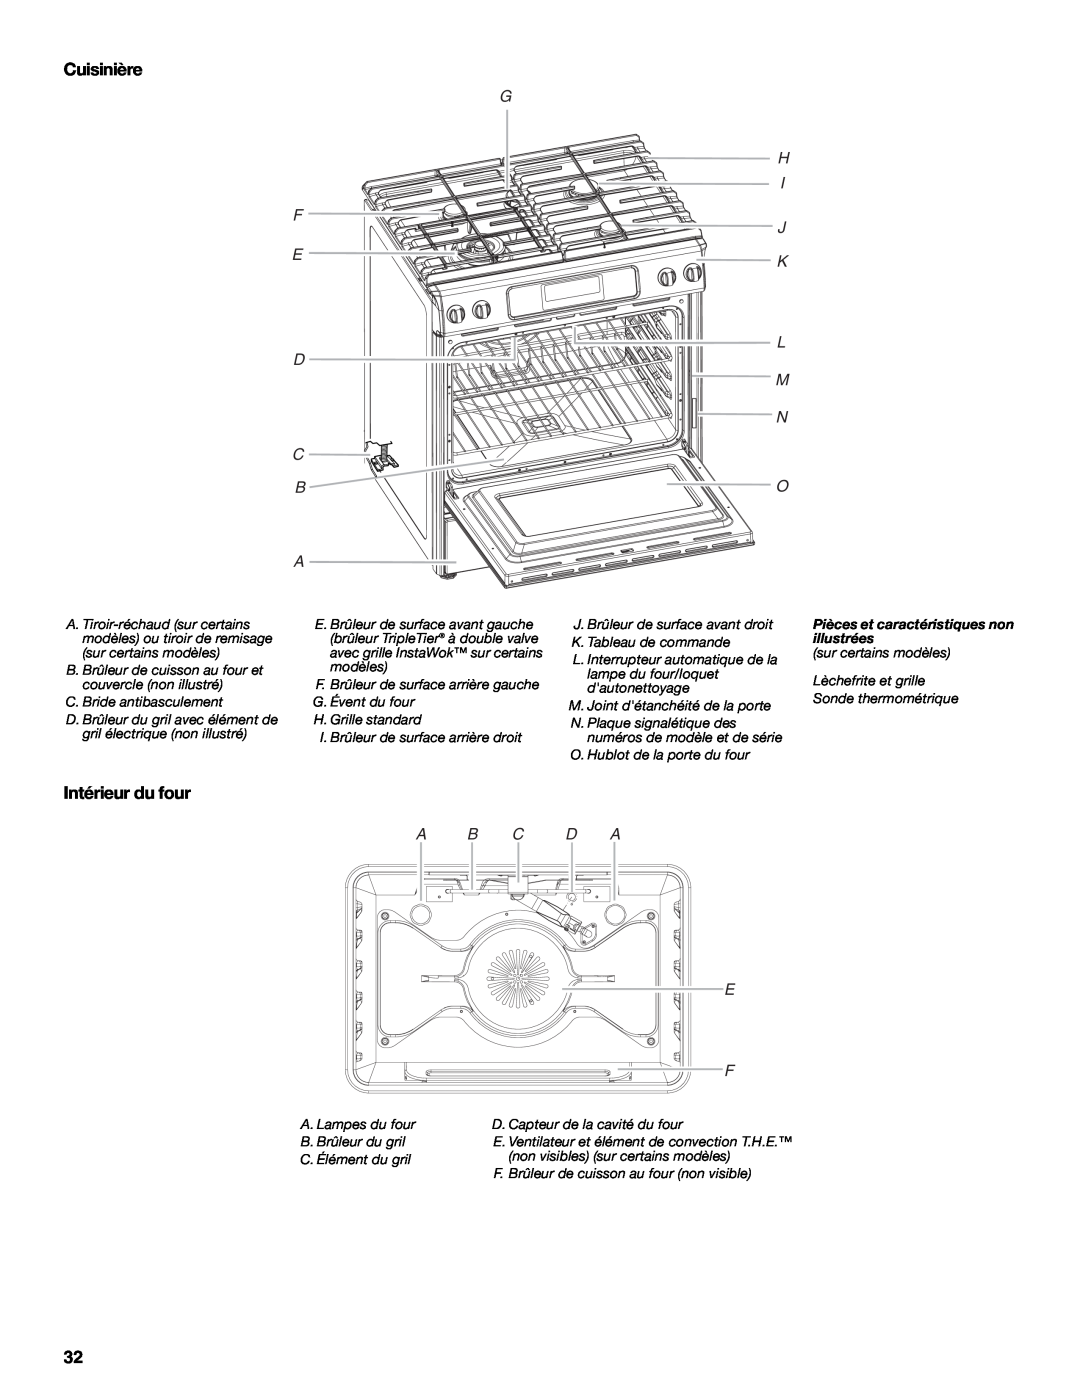 KitchenAid 9763457, KGRS807 manual Cuisinière, Intérieur du four, A B C D A E F, Pièces et caractéristiques non illustrées 